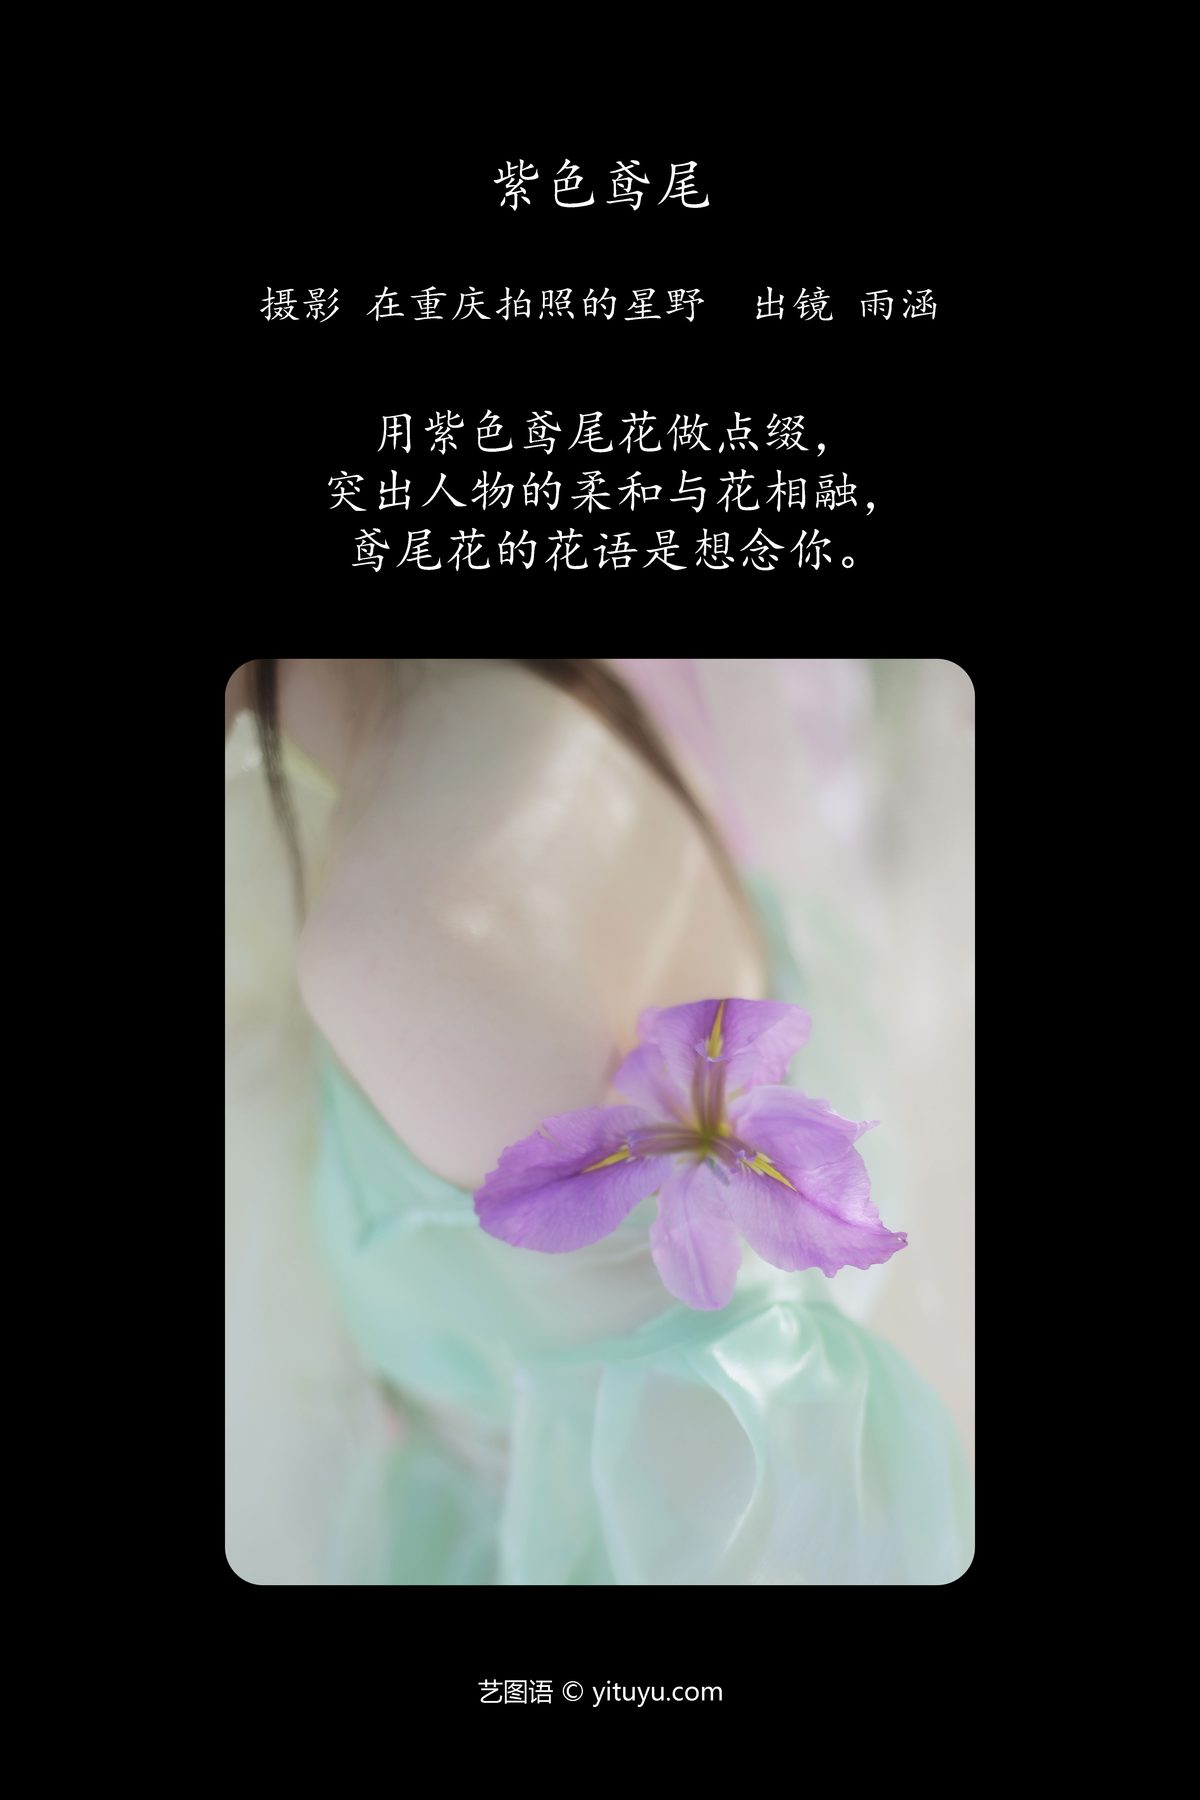 YiTuYu艺图语 Vol 5611 Su Xiang Tu Rou 0001 9017256891.jpg